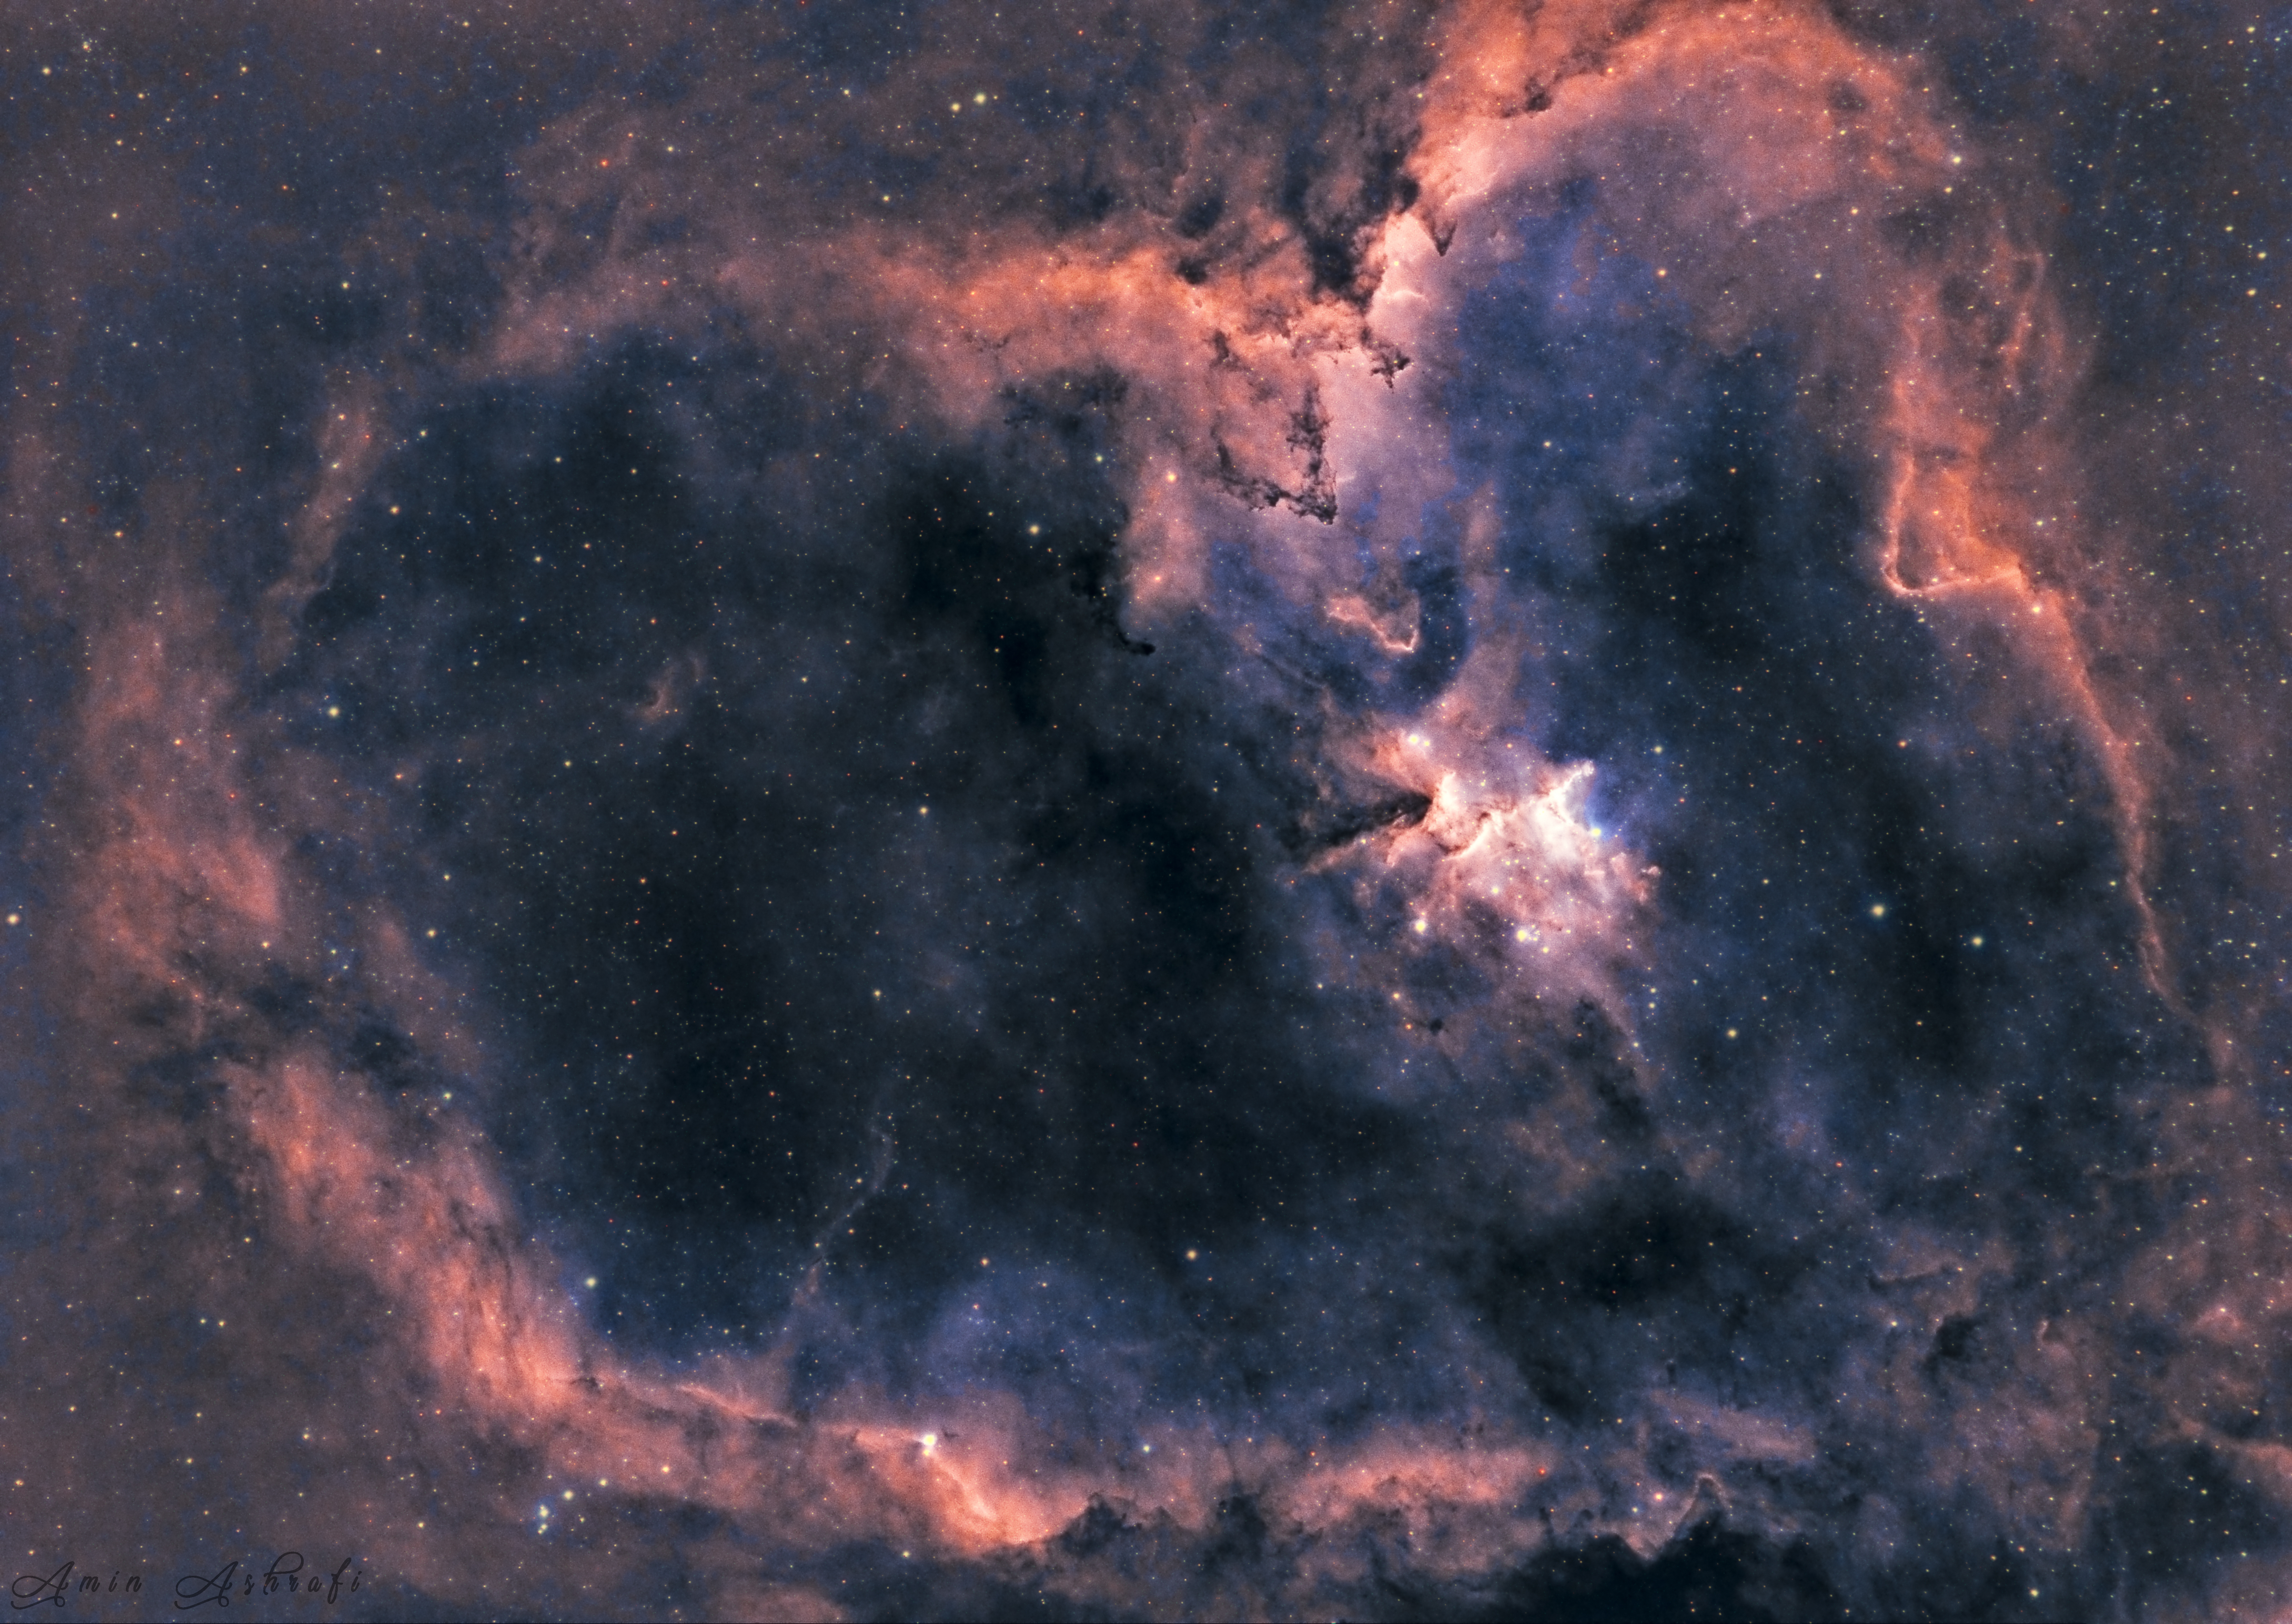 Heart Nebula - IC1805